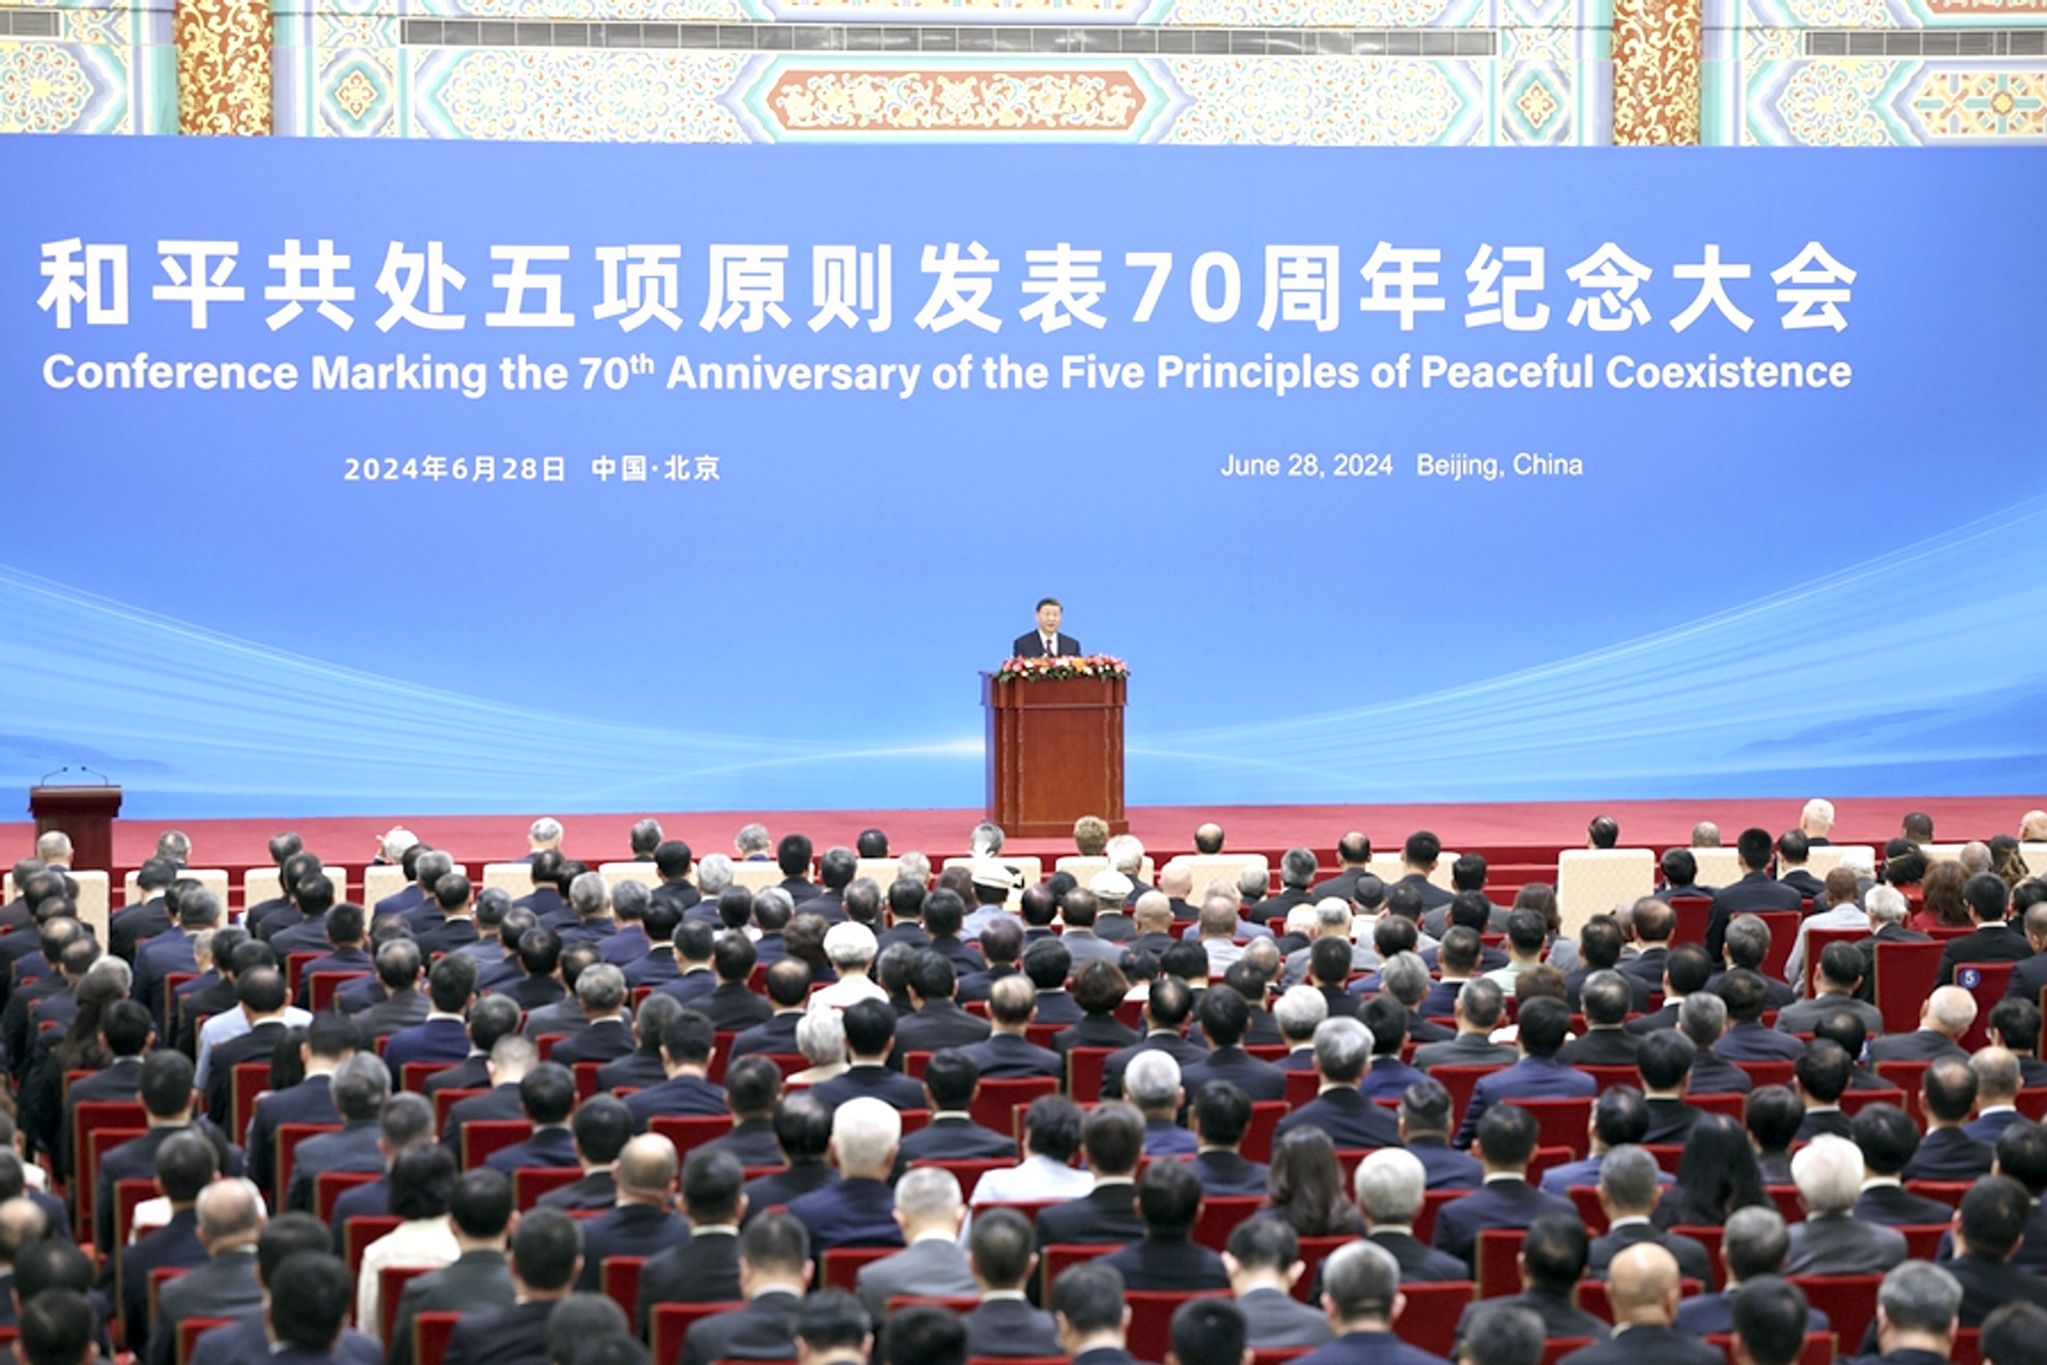 Председатель Китая Си Цзиньпин 28 июня 2024 году в столице Китая Пекине, в Доме народных собраний, участвует в конференции, посвящённой 70-летию «Пяти принципов мирного сосуществования».